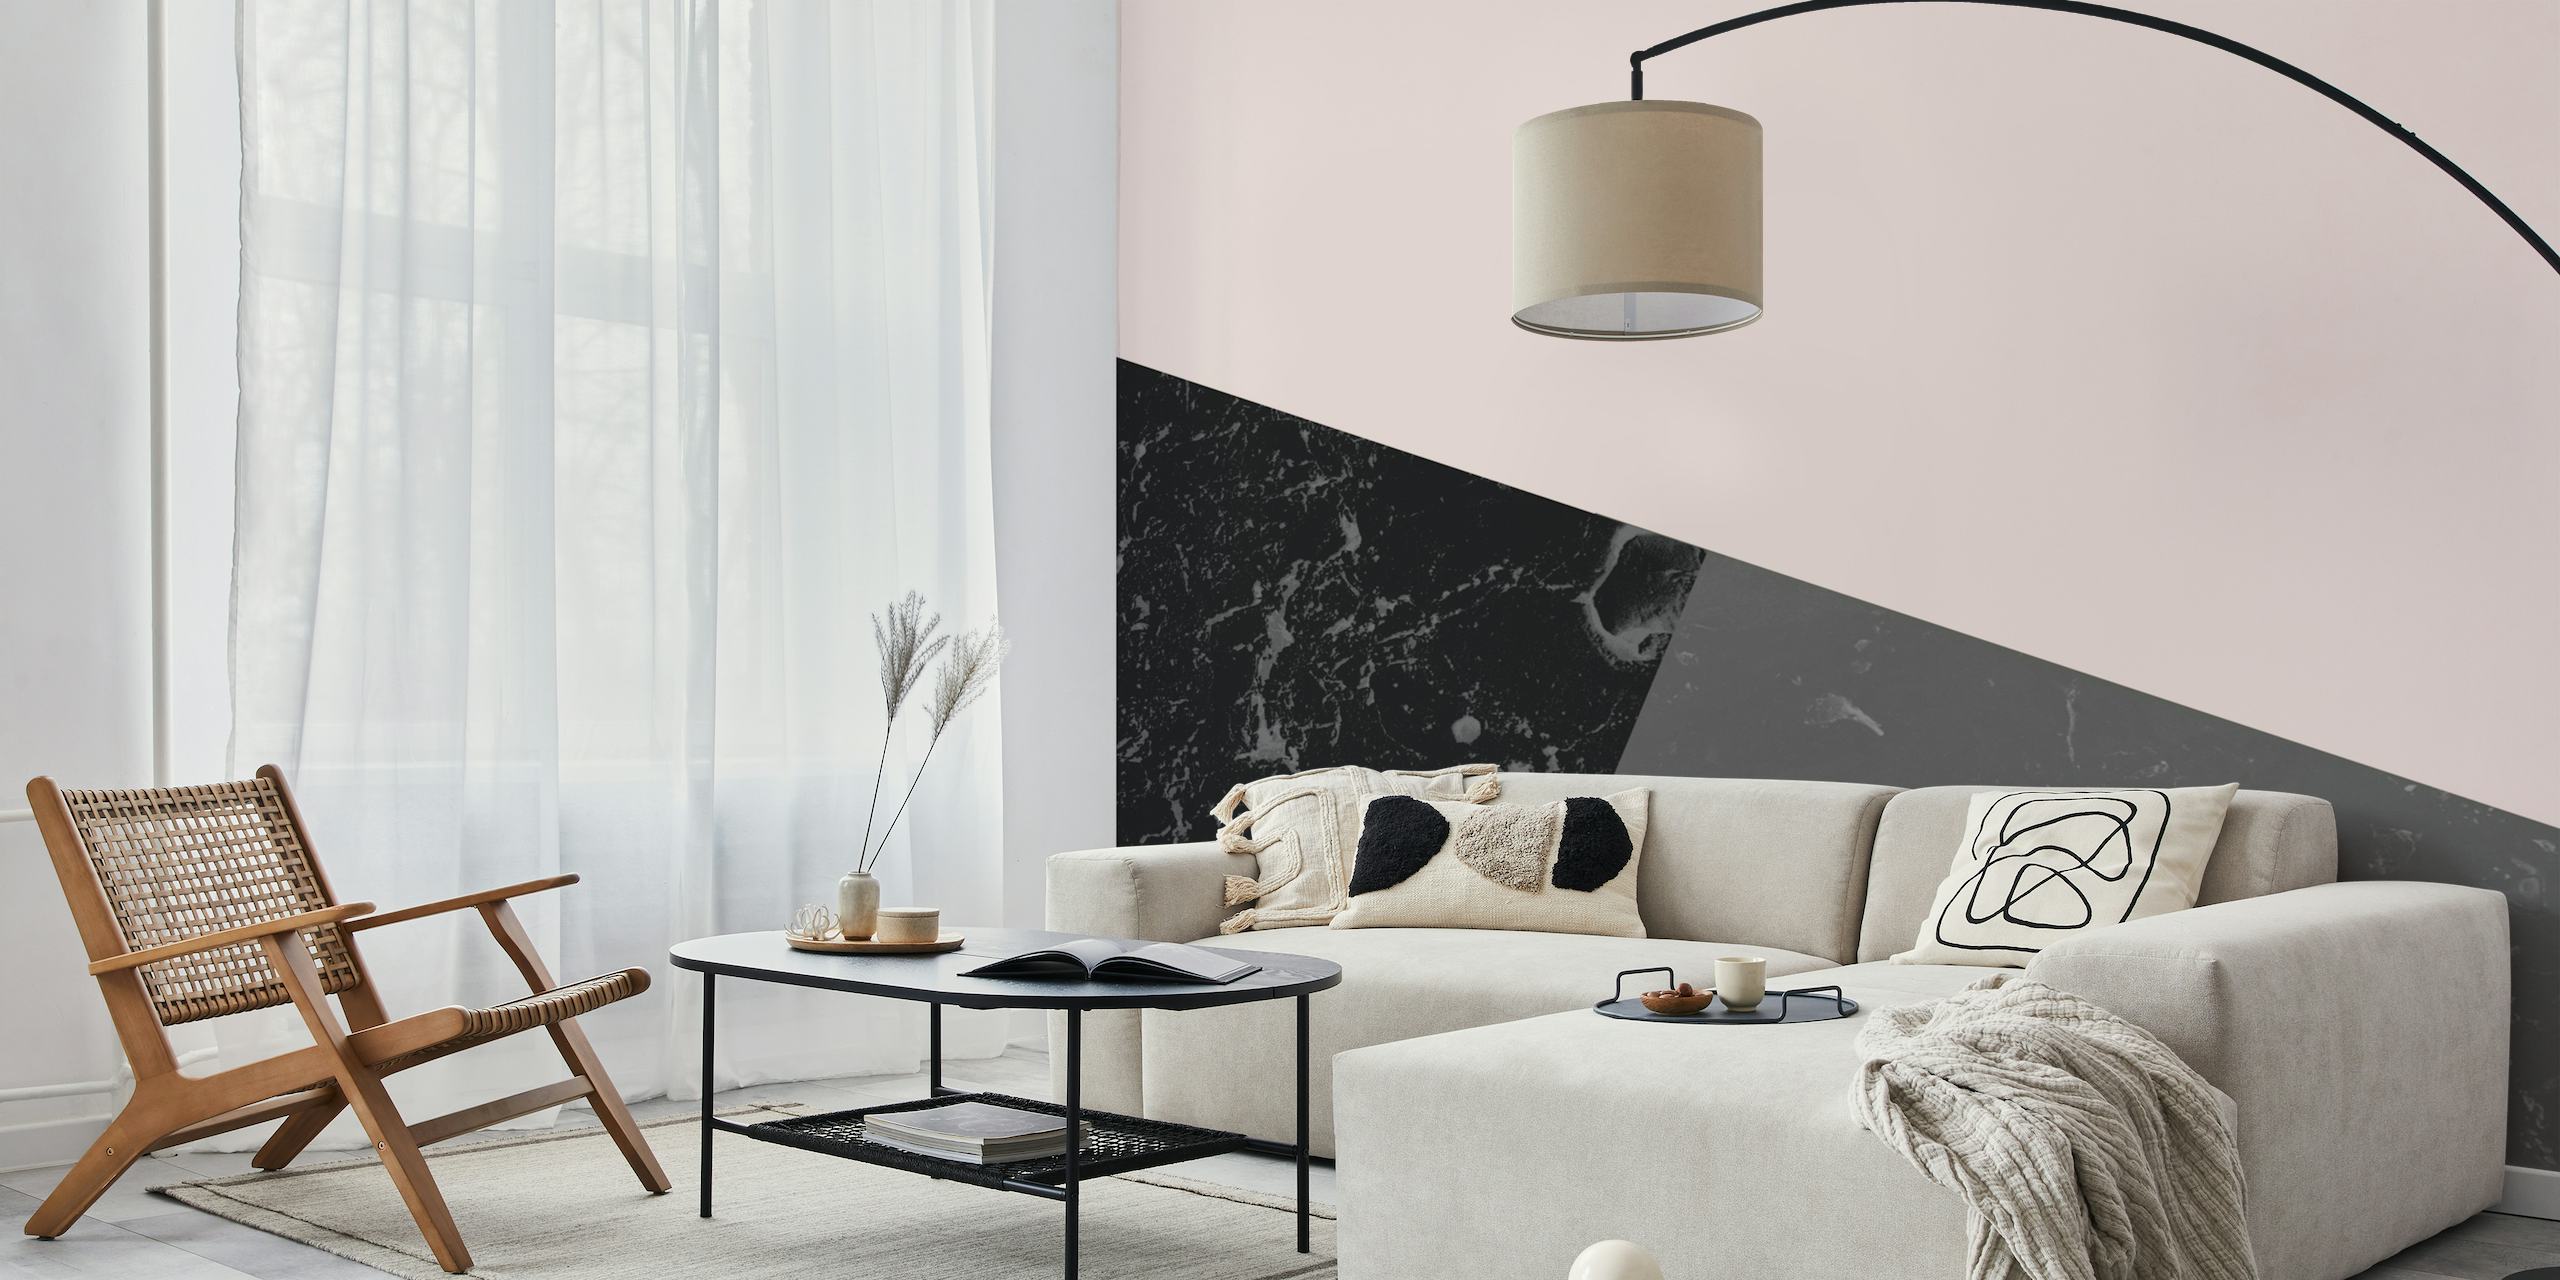 Papier peint mural en marbre géométrique rose noir avec un mélange de nuances de marbre noir, de rose mat et de gris dans un design tendance.